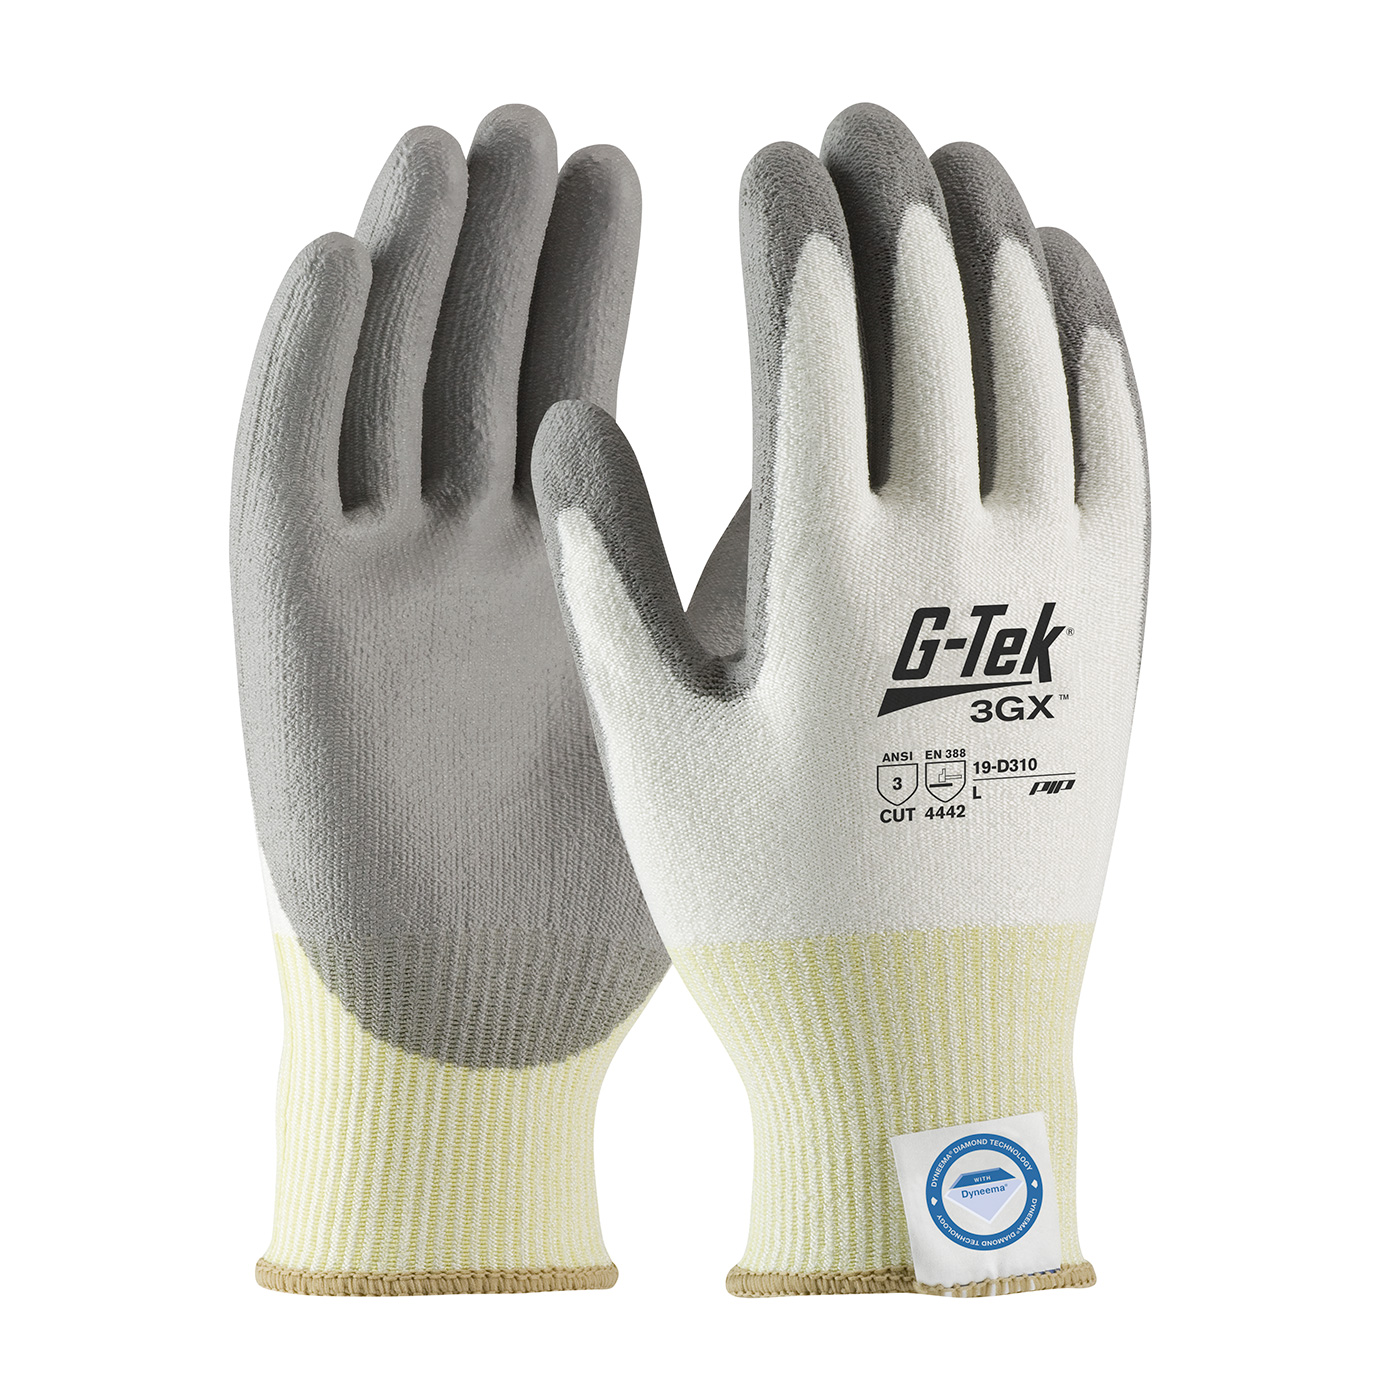 PIP®G-Tek®3GX Dyneema®钻石防切割手套w/聚氨酯涂层提供切割级A3保护